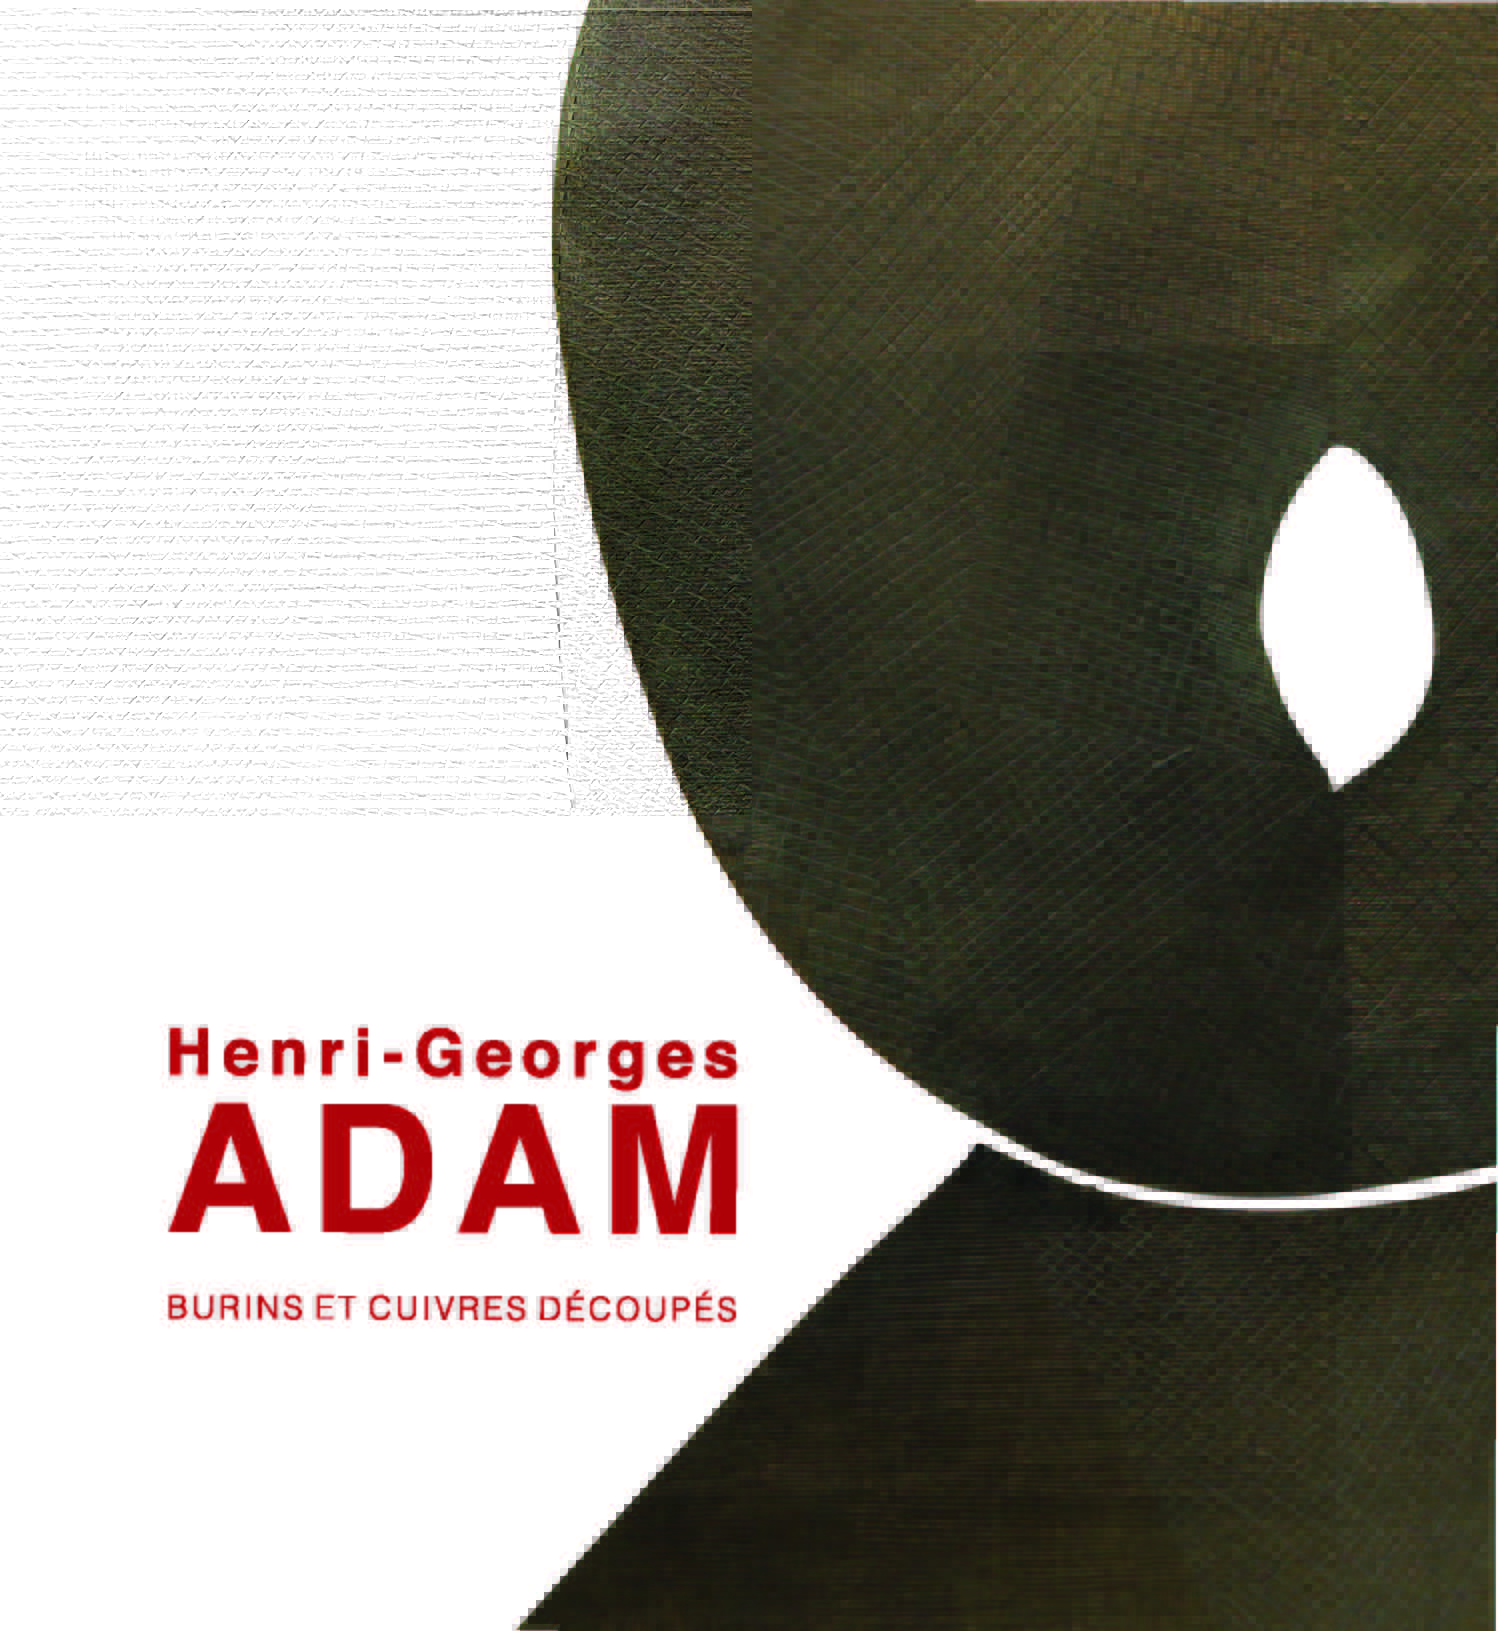 Henri-Georges Adam, burins et cuivres découpés